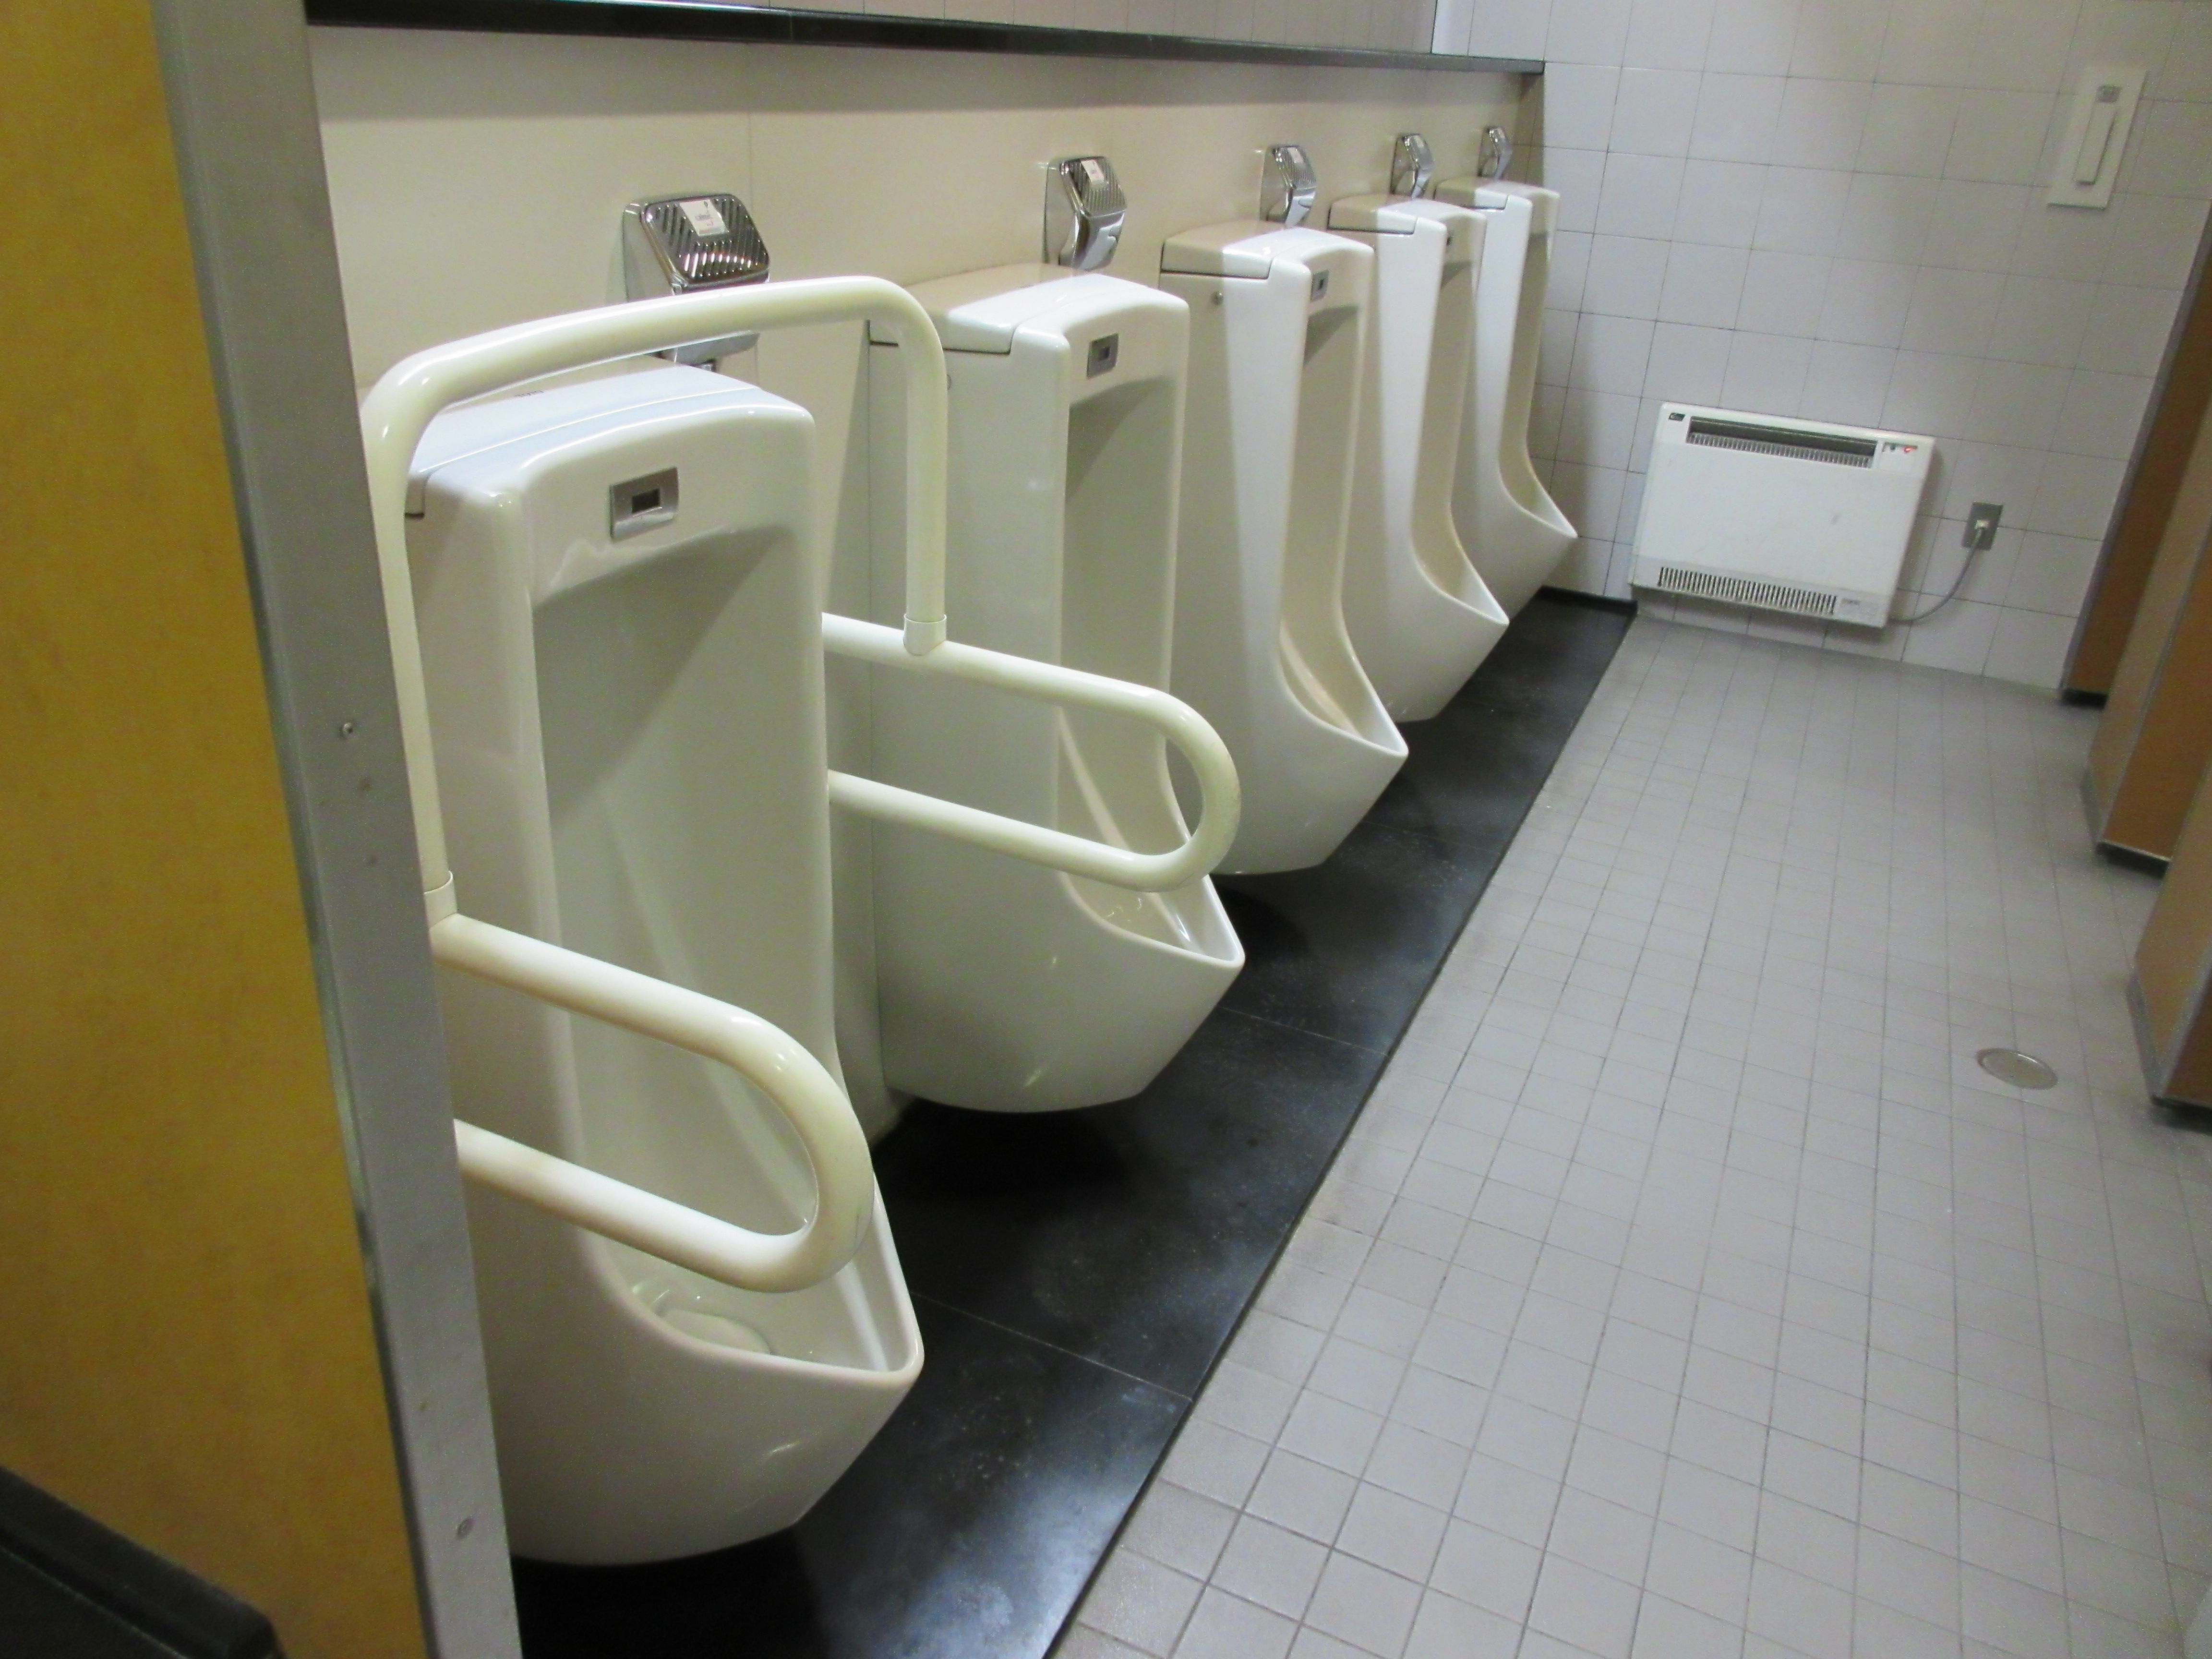 トイレ設備調査日記atosatu JR函館駅1階男性用トイレ。